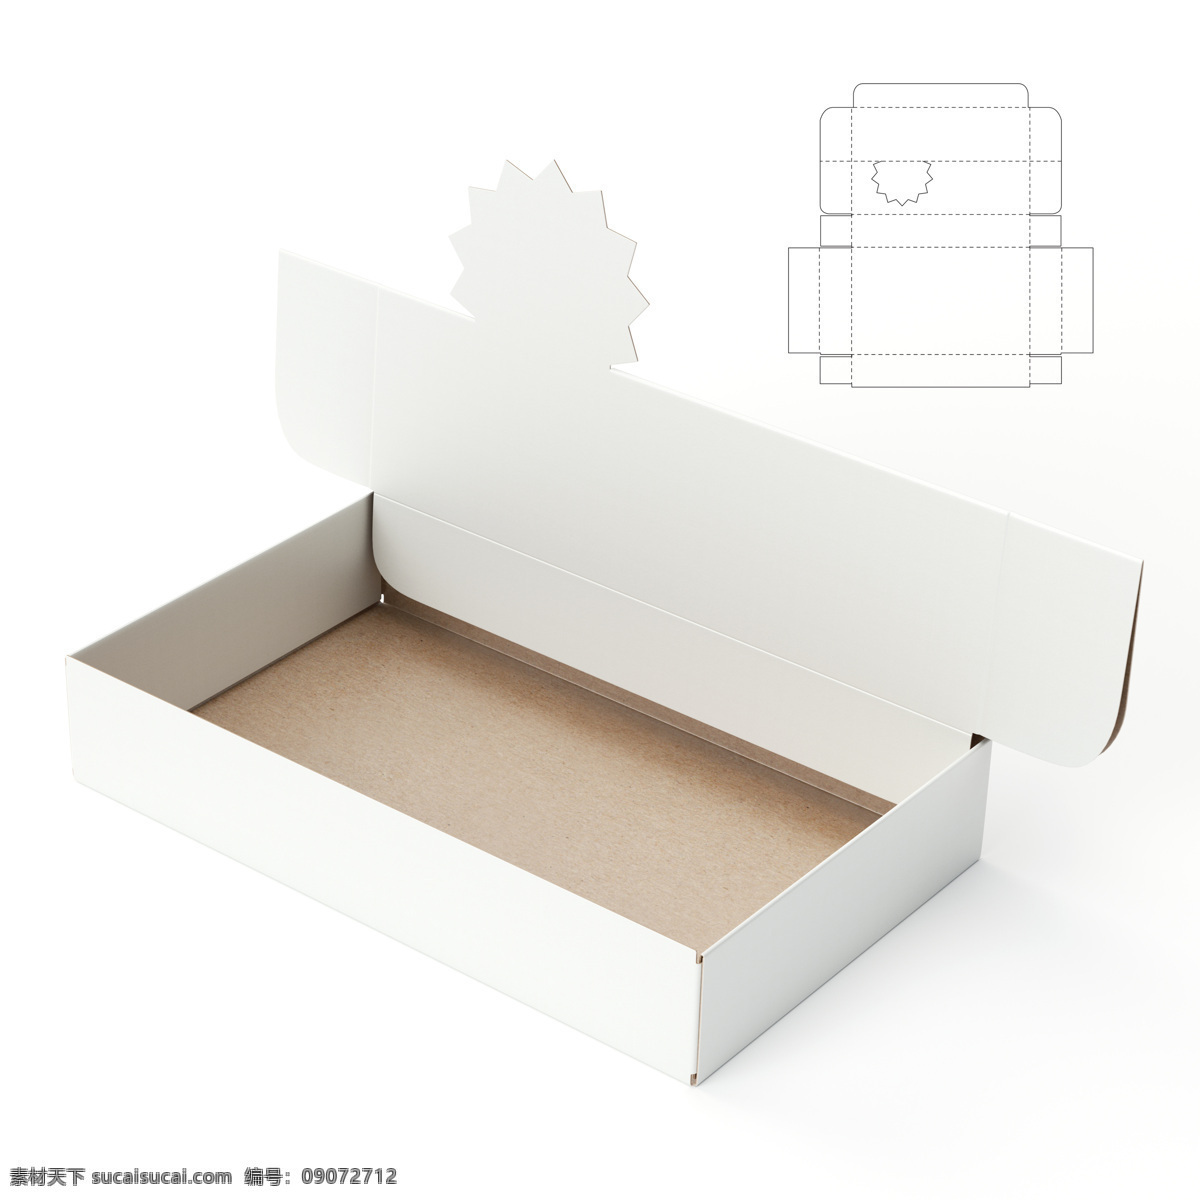 创意 包装盒 展开 图 纸盒设计 包装盒设计 包装盒展开图 包装平面图 钢刀线 包装设计 包装效果图 其他类别 生活百科 白色